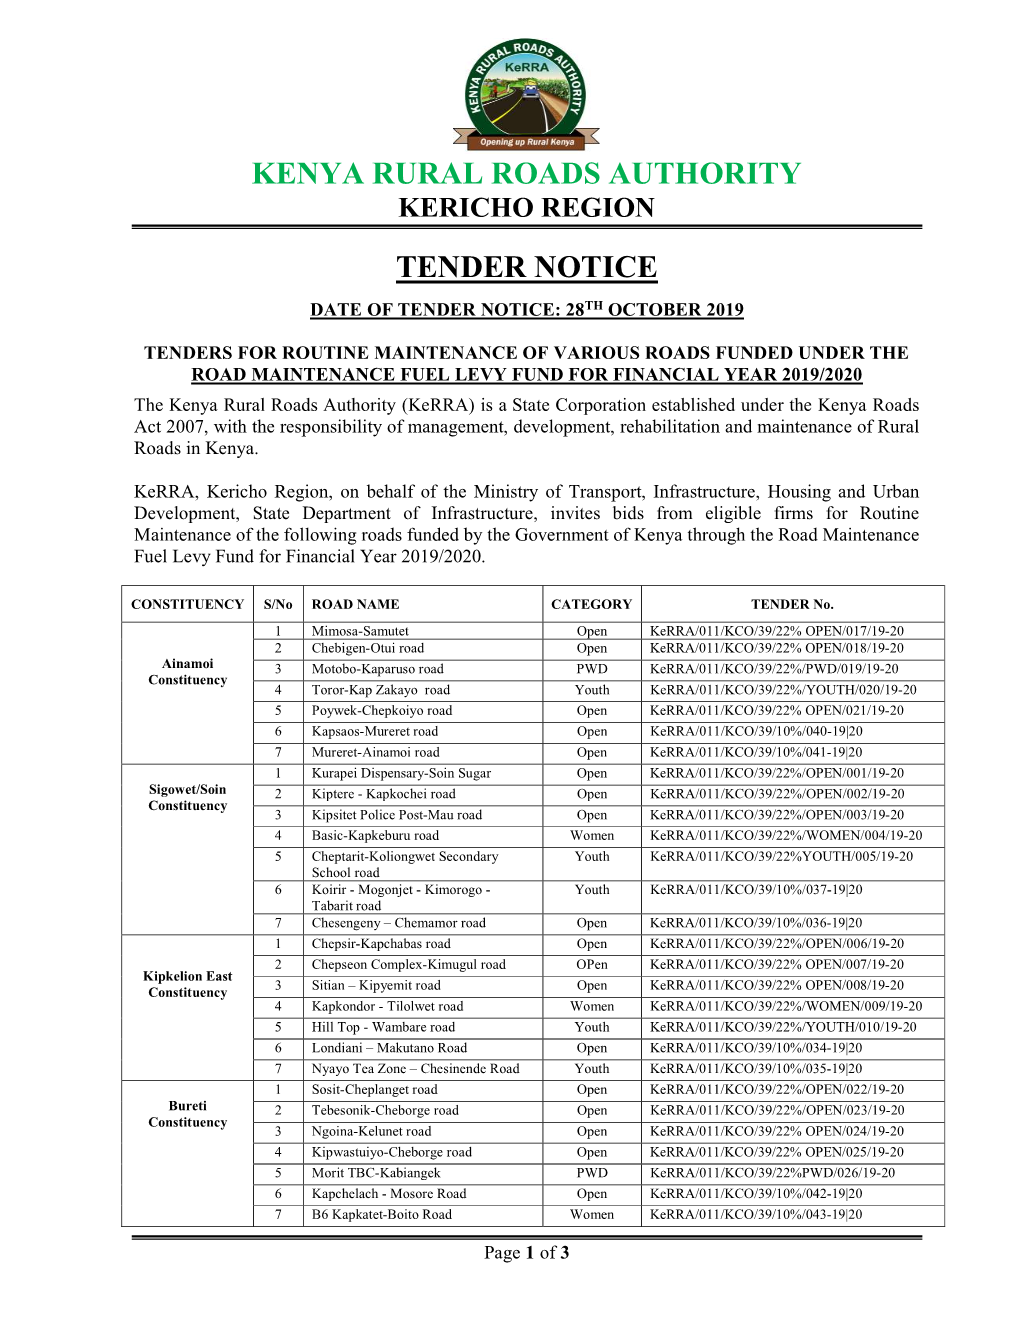 Kenya Rural Roads Authority Tender Notice